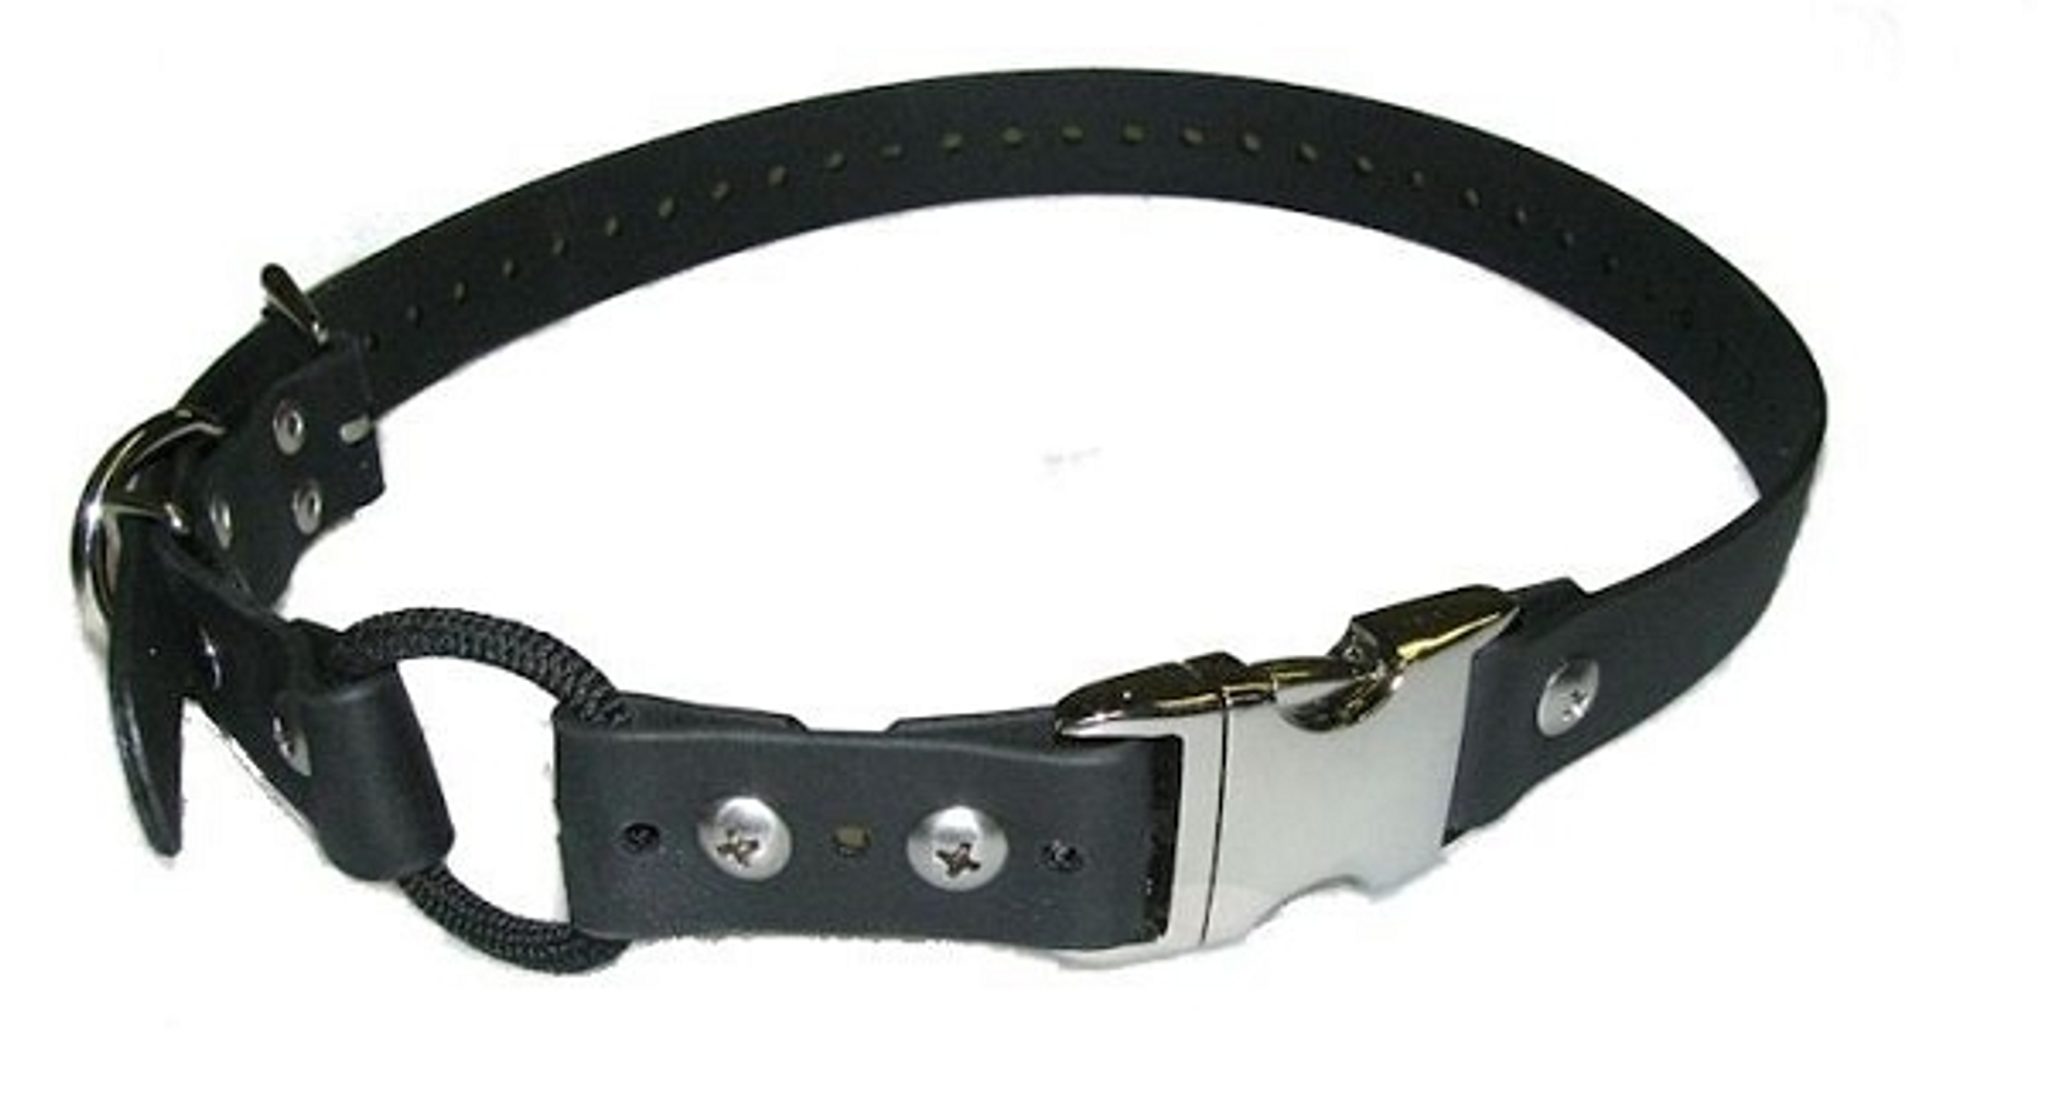 E-collar Bungee obojek z Biothanu s rychloupínáním - 1,8 cm černá